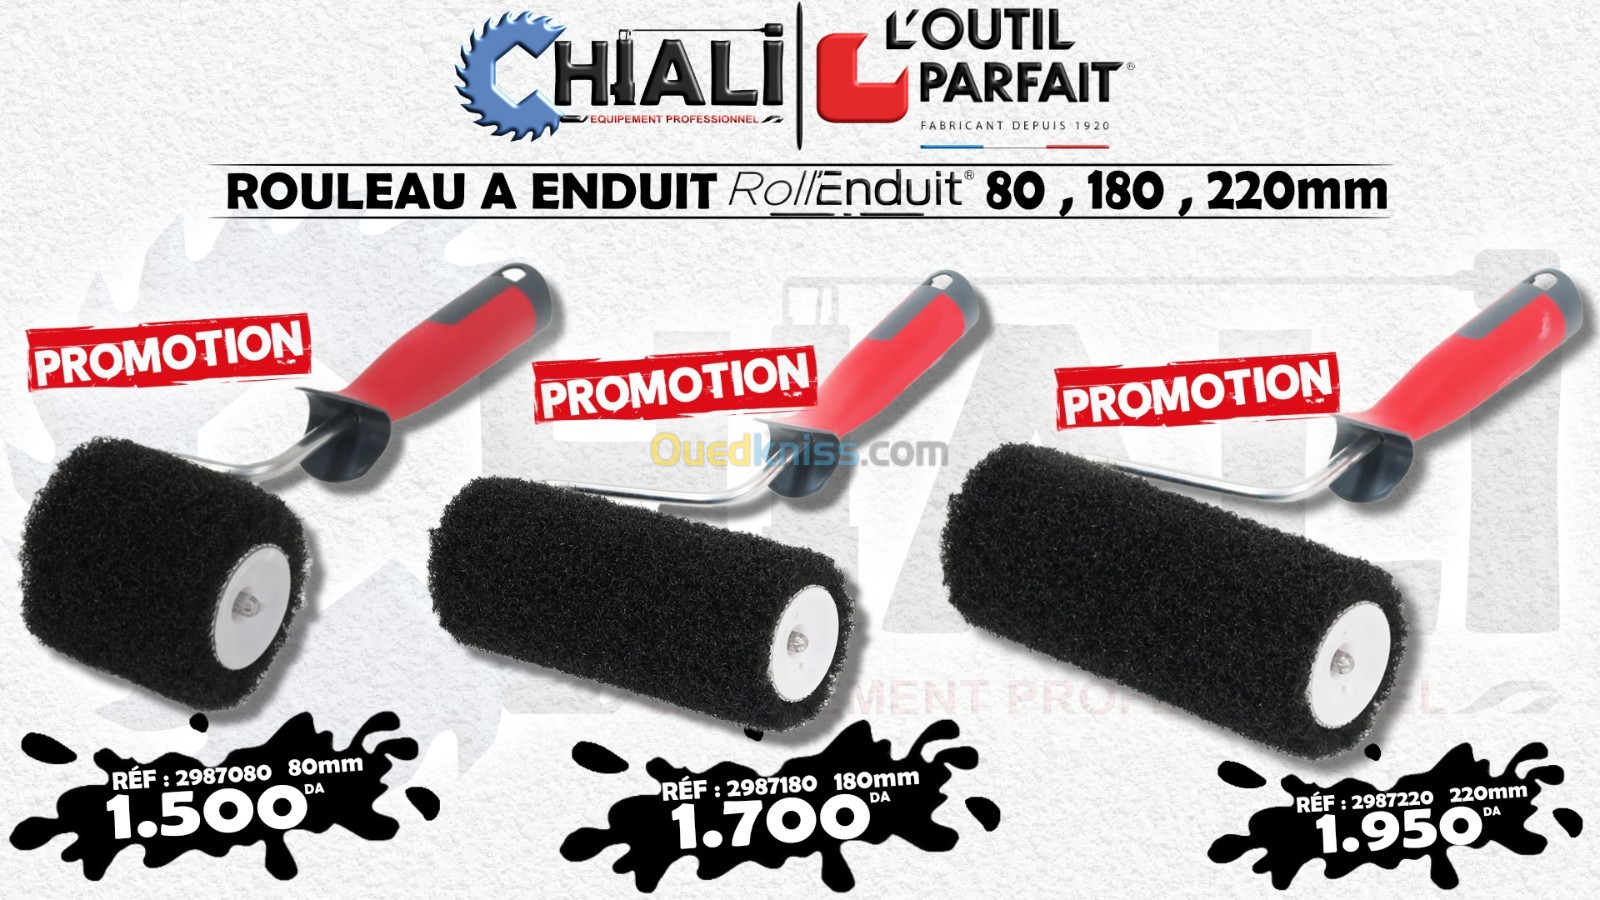 Rouleau A Enduire L'outils Parfait 80 , 180 , 220mm - Tlemcen Algeria